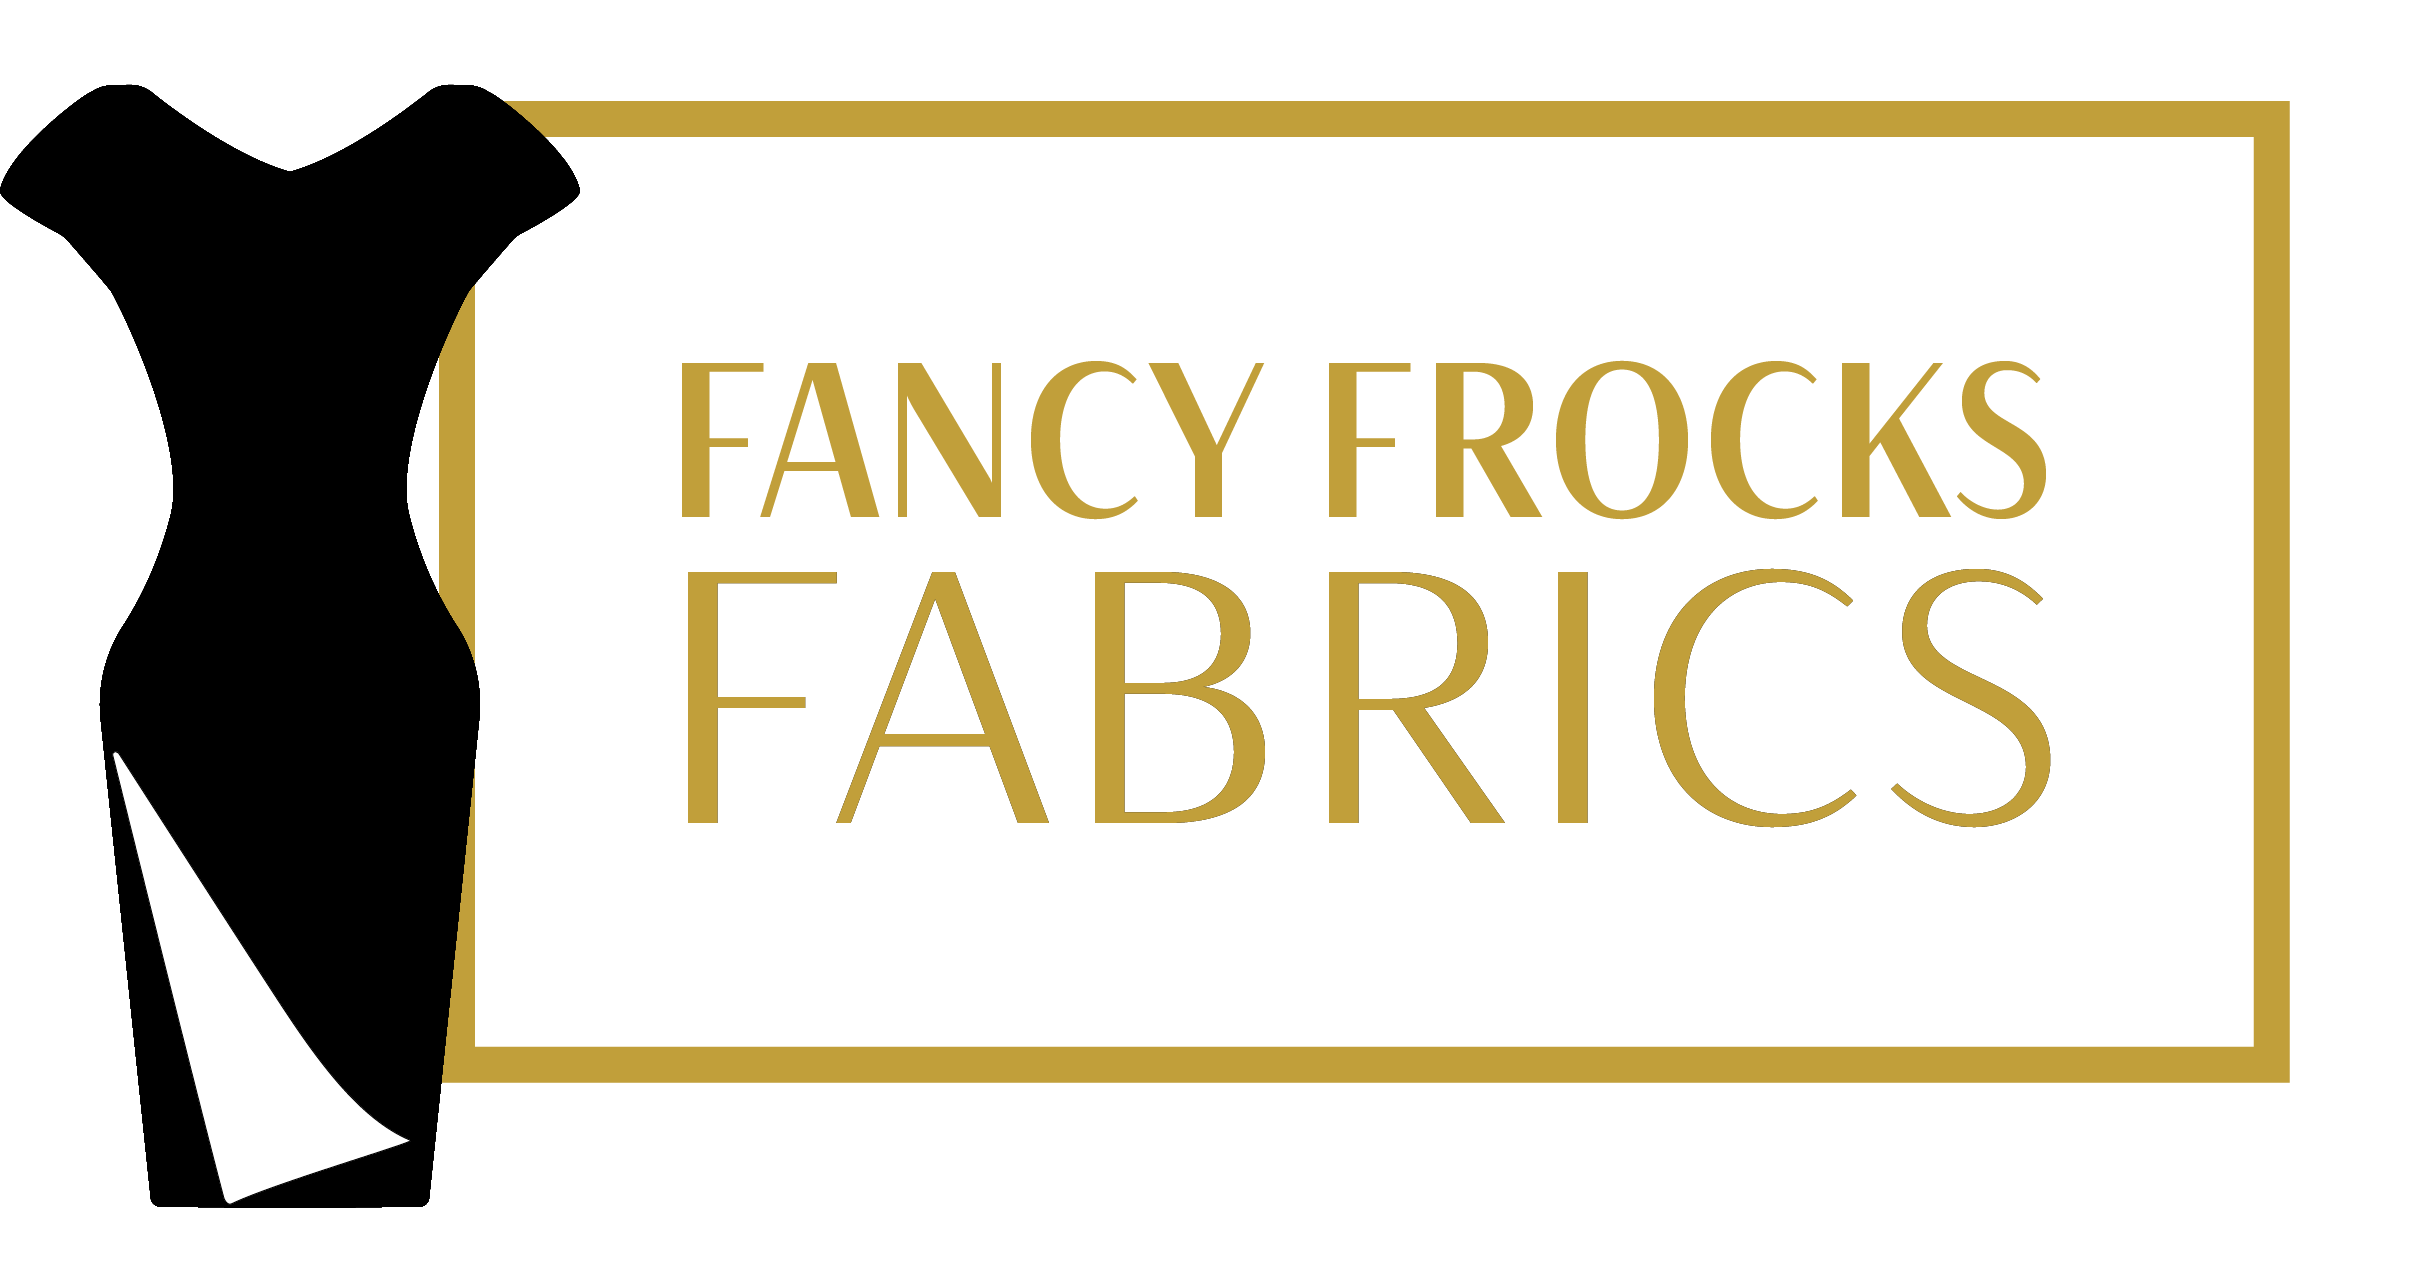 36 Long frock models for ladies ideas  frock dress long frocks latest  long frock designs